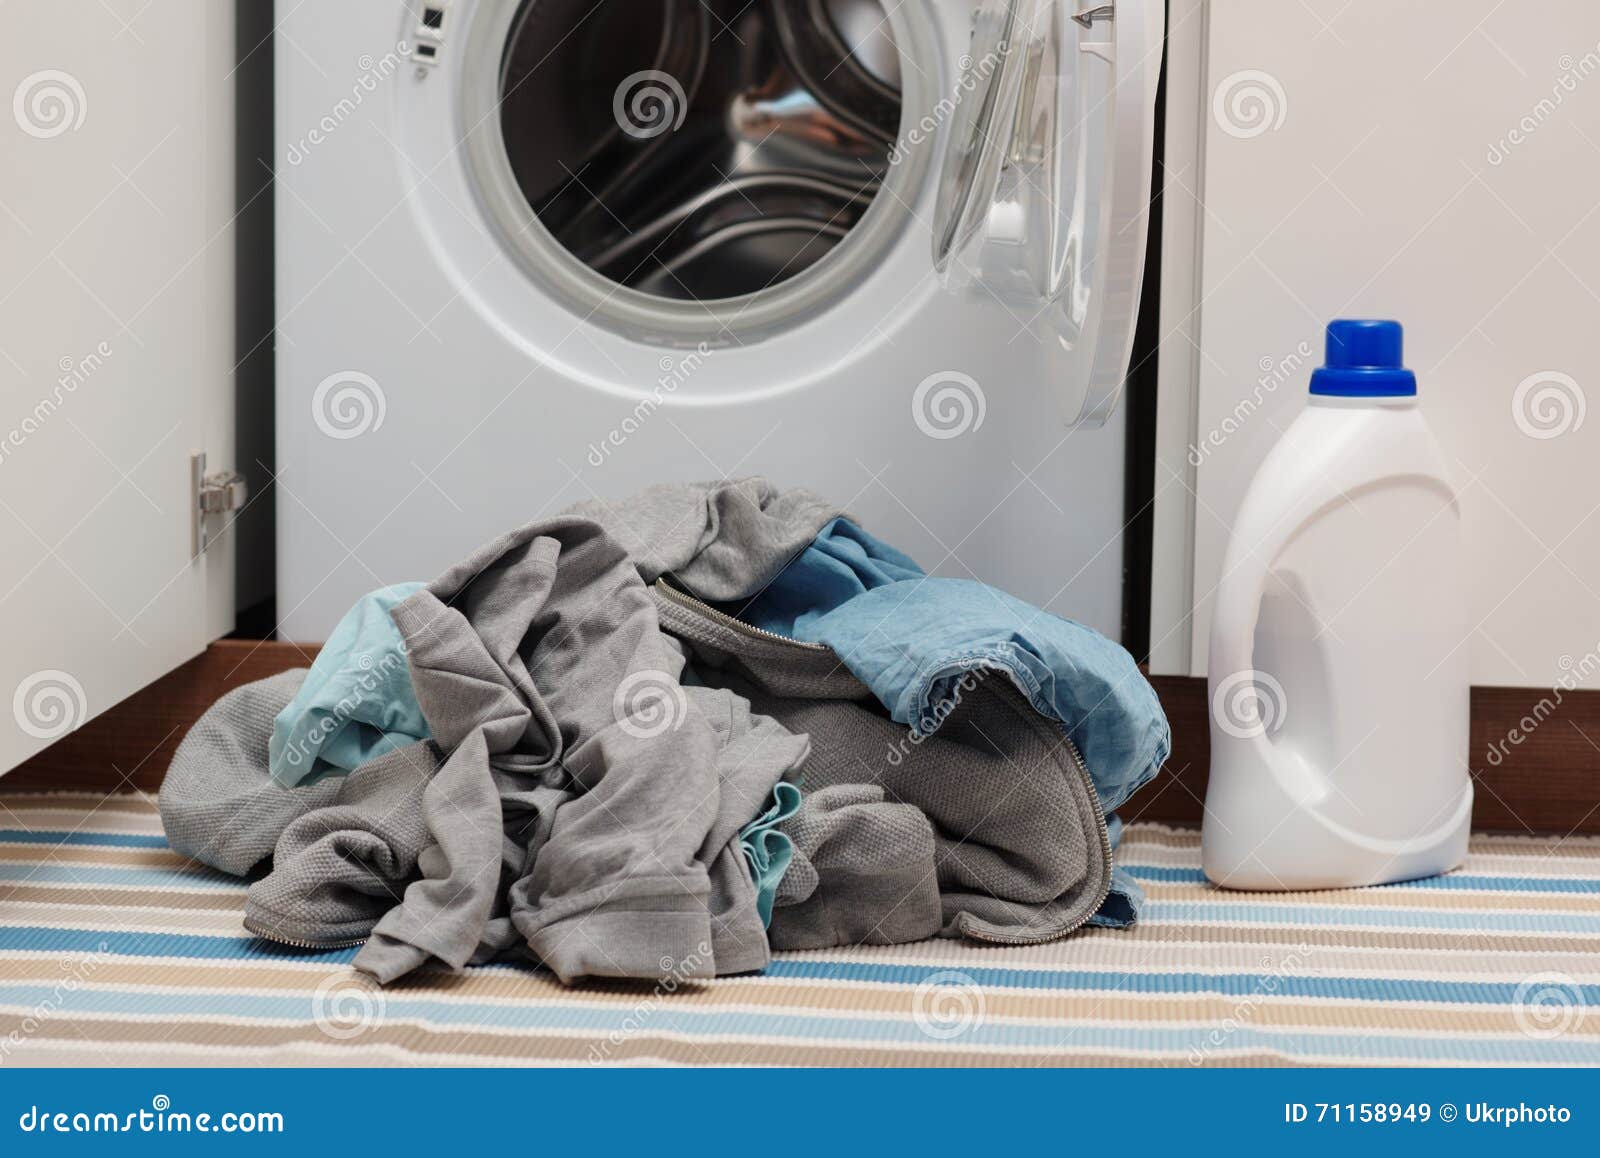 Ropa y lavadora sucias imagen de archivo. de - 71158949